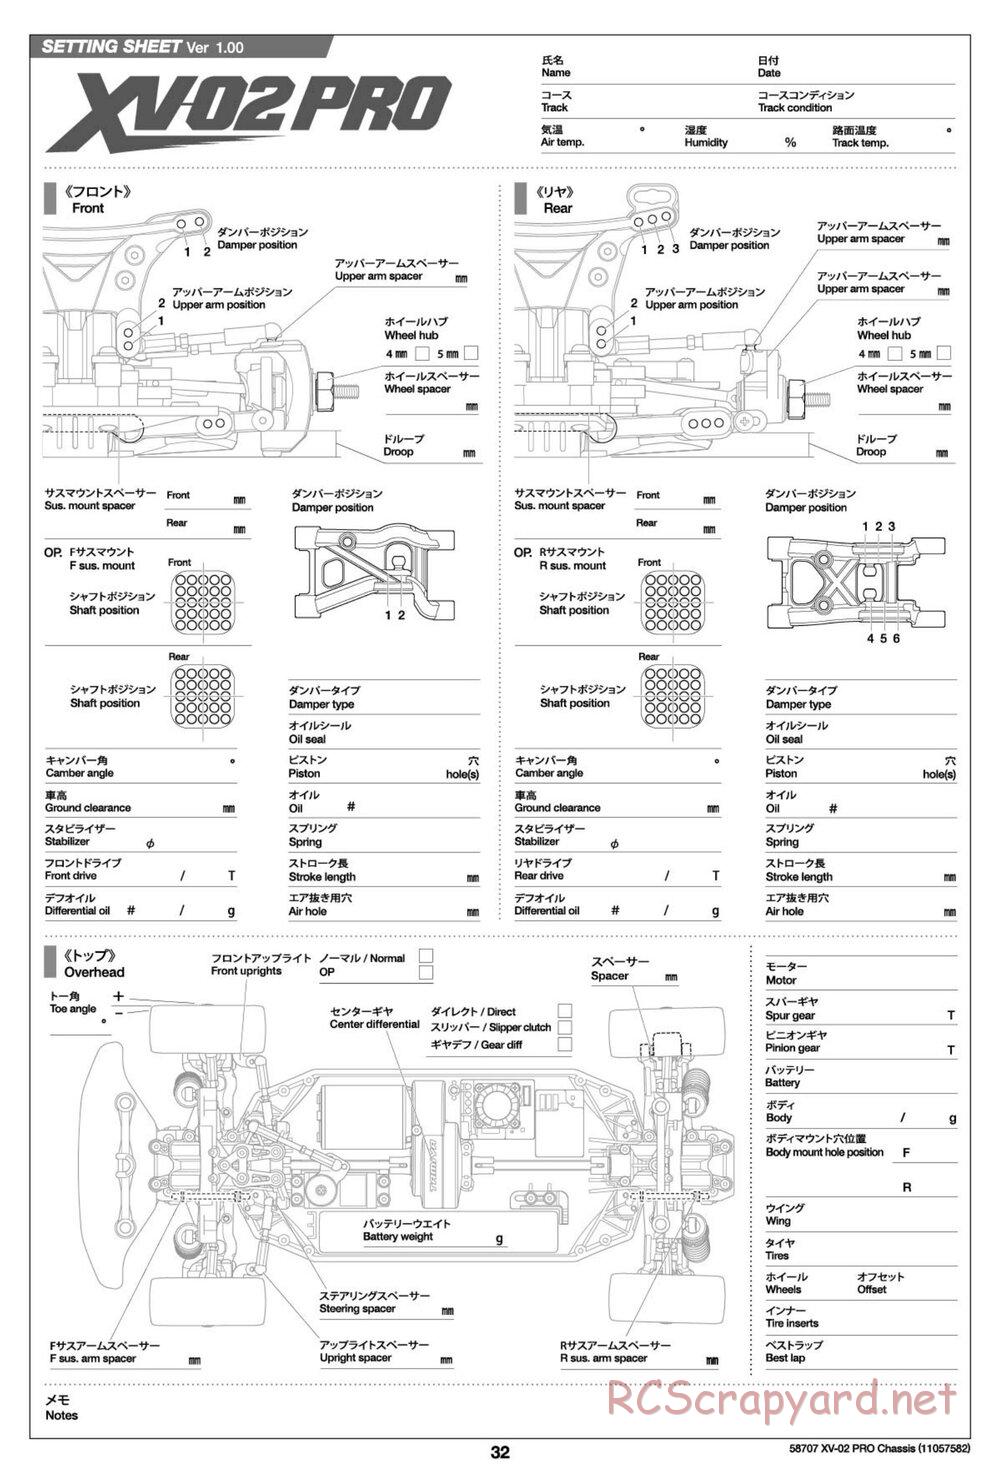 Tamiya - XV-02 Pro Chassis - Manual - Page 32